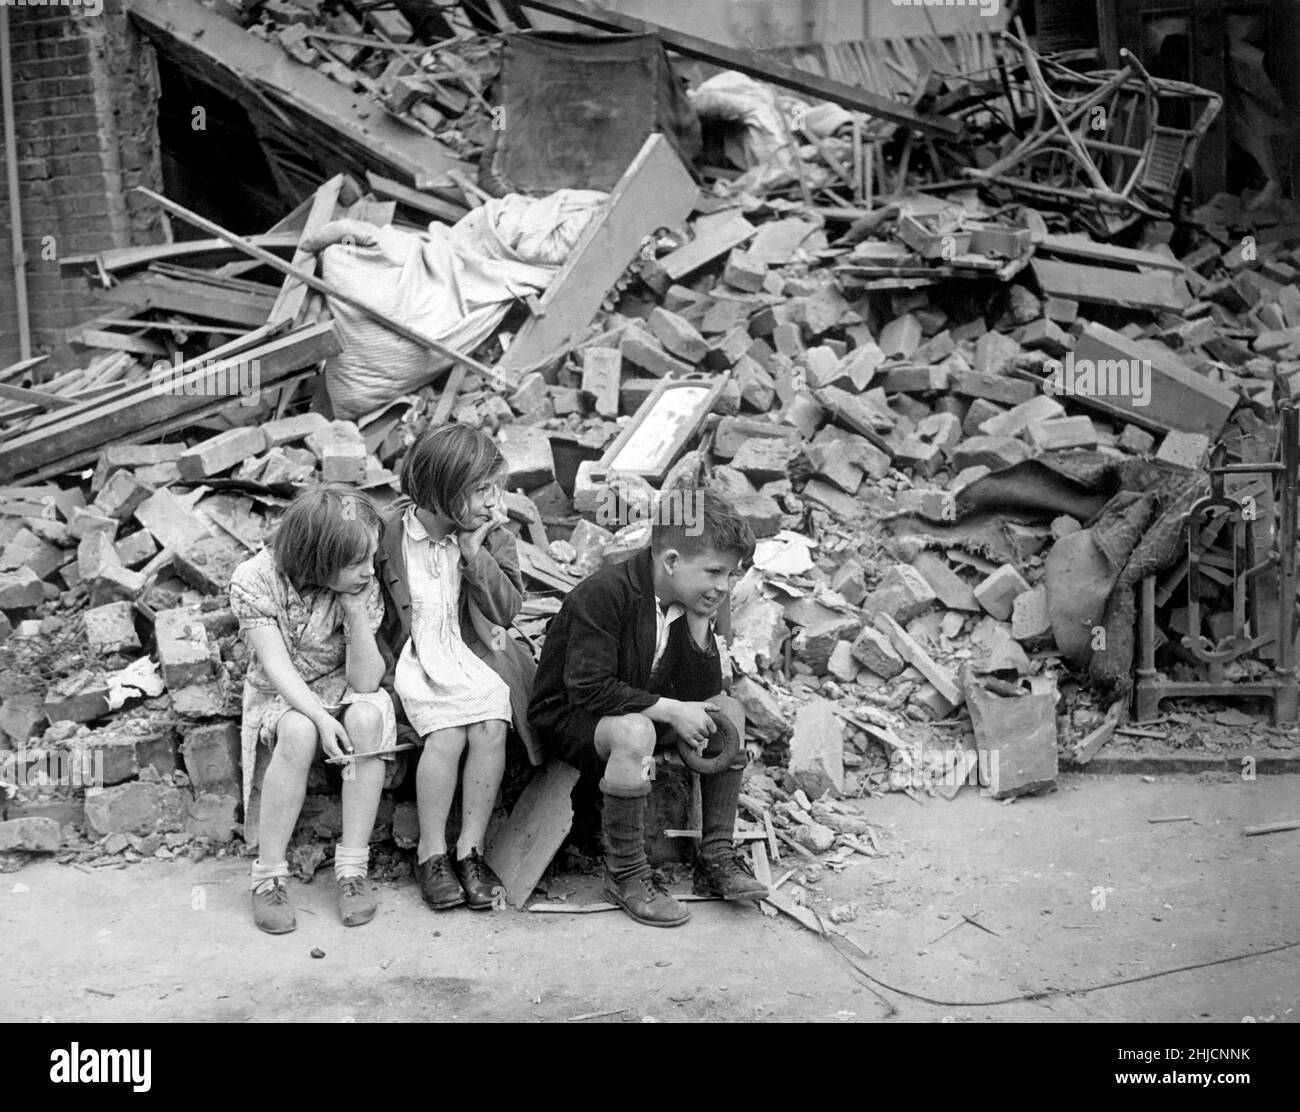 Enfants d'une banlieue est de Londres dont la maison a été détruite à Blitz, septembre 1940.Le Blitz a été une campagne de bombardement allemande contre le Royaume-Uni en 1940 et 1941, pendant la Seconde Guerre mondiale.Le terme vient de Blitzkrieg, qui signifie « guerre de foudre » en allemand. Banque D'Images